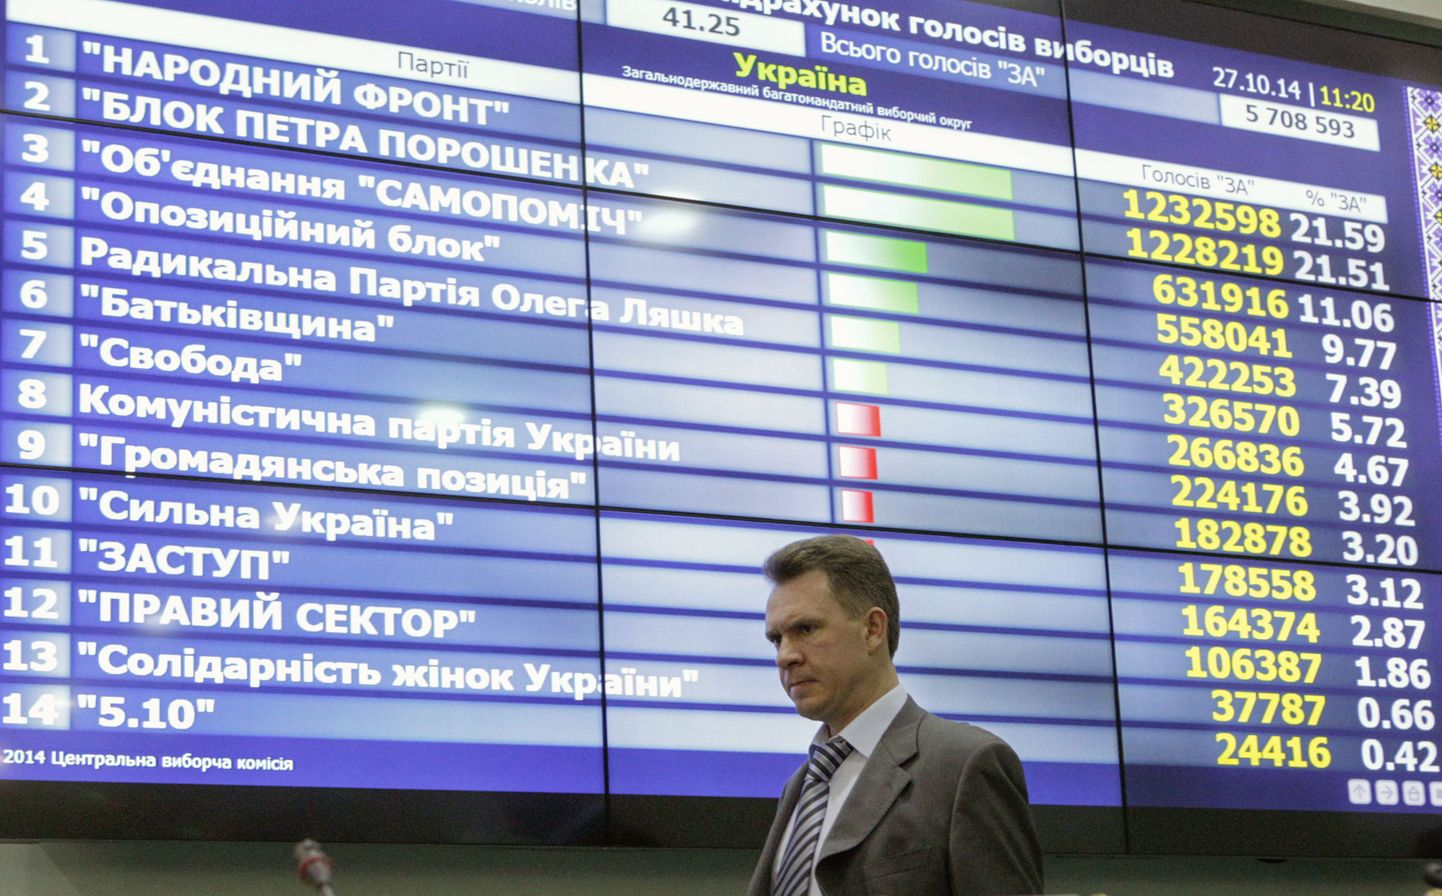 Ukraina keskvalimiskomisjoni esimees Mõhhailo Ohhendovski valimistulemusi kajastava ekraani ees.